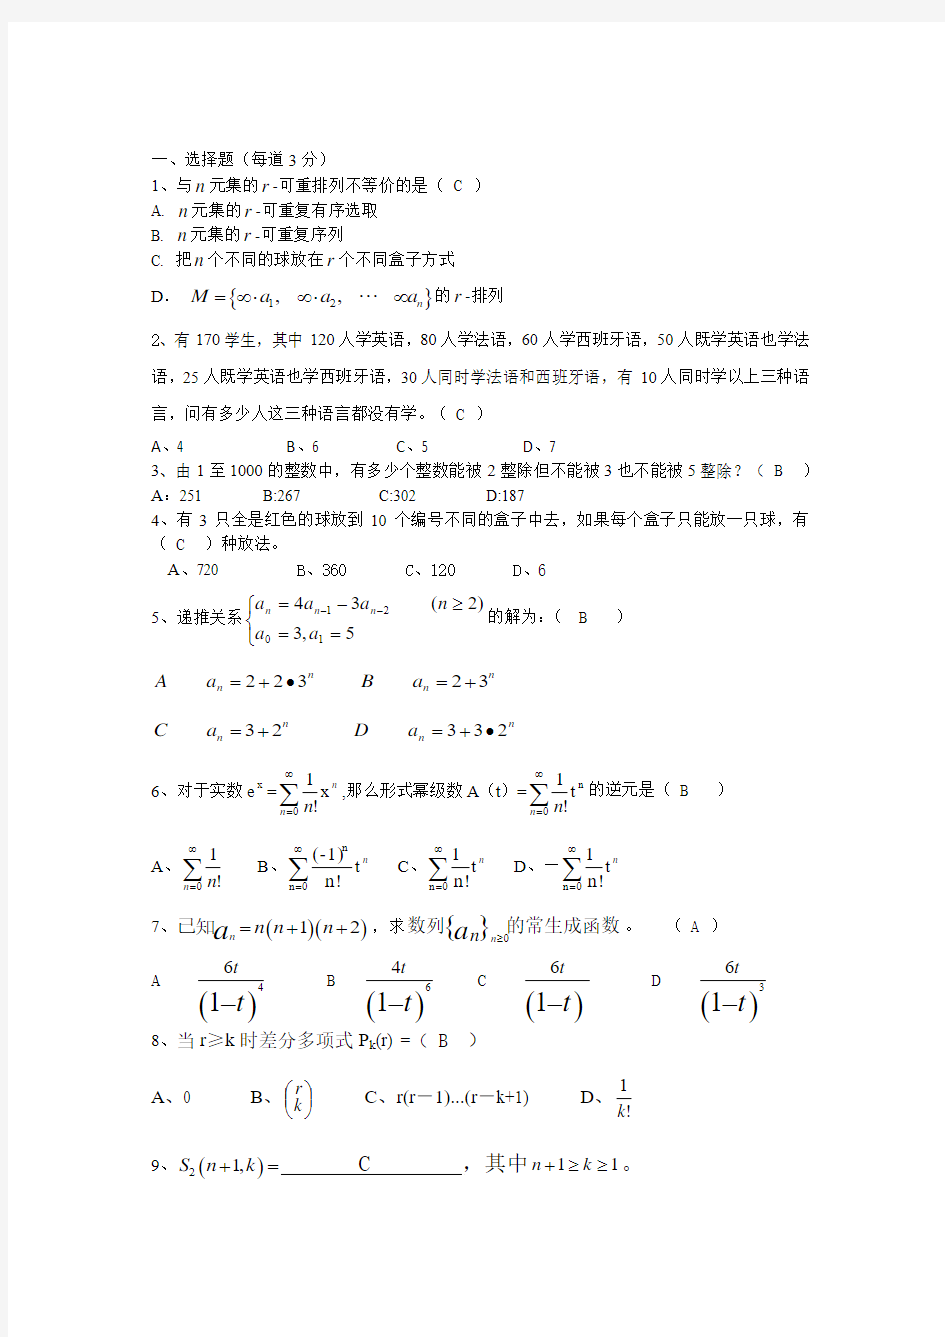 大学数学组合数学试题与答案(修正版)5 (1)